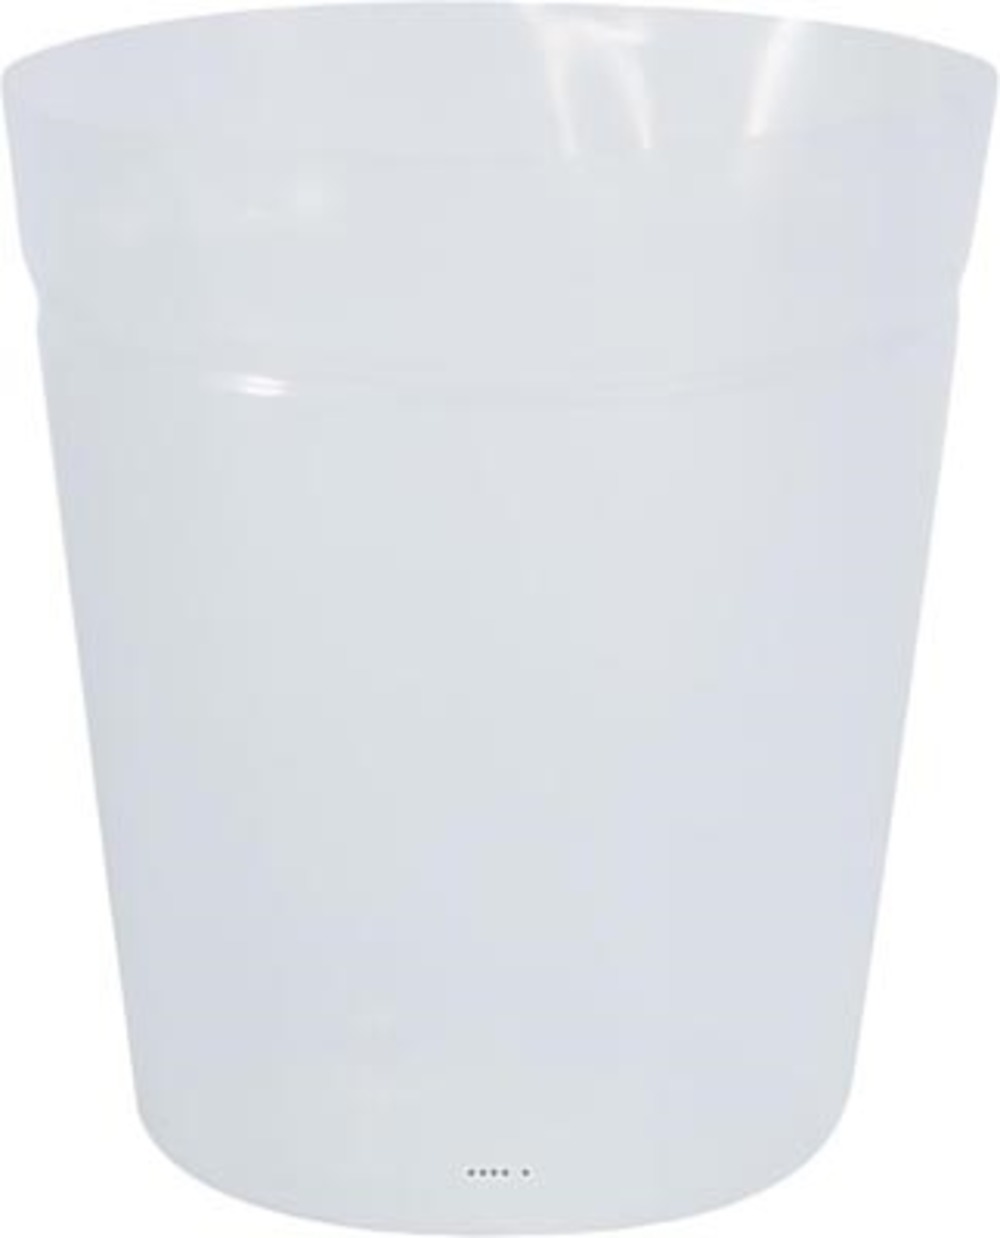 Chaussette polymere plastique pour d 35 x h 40 cm transparent - dimhaut: h 40 cm